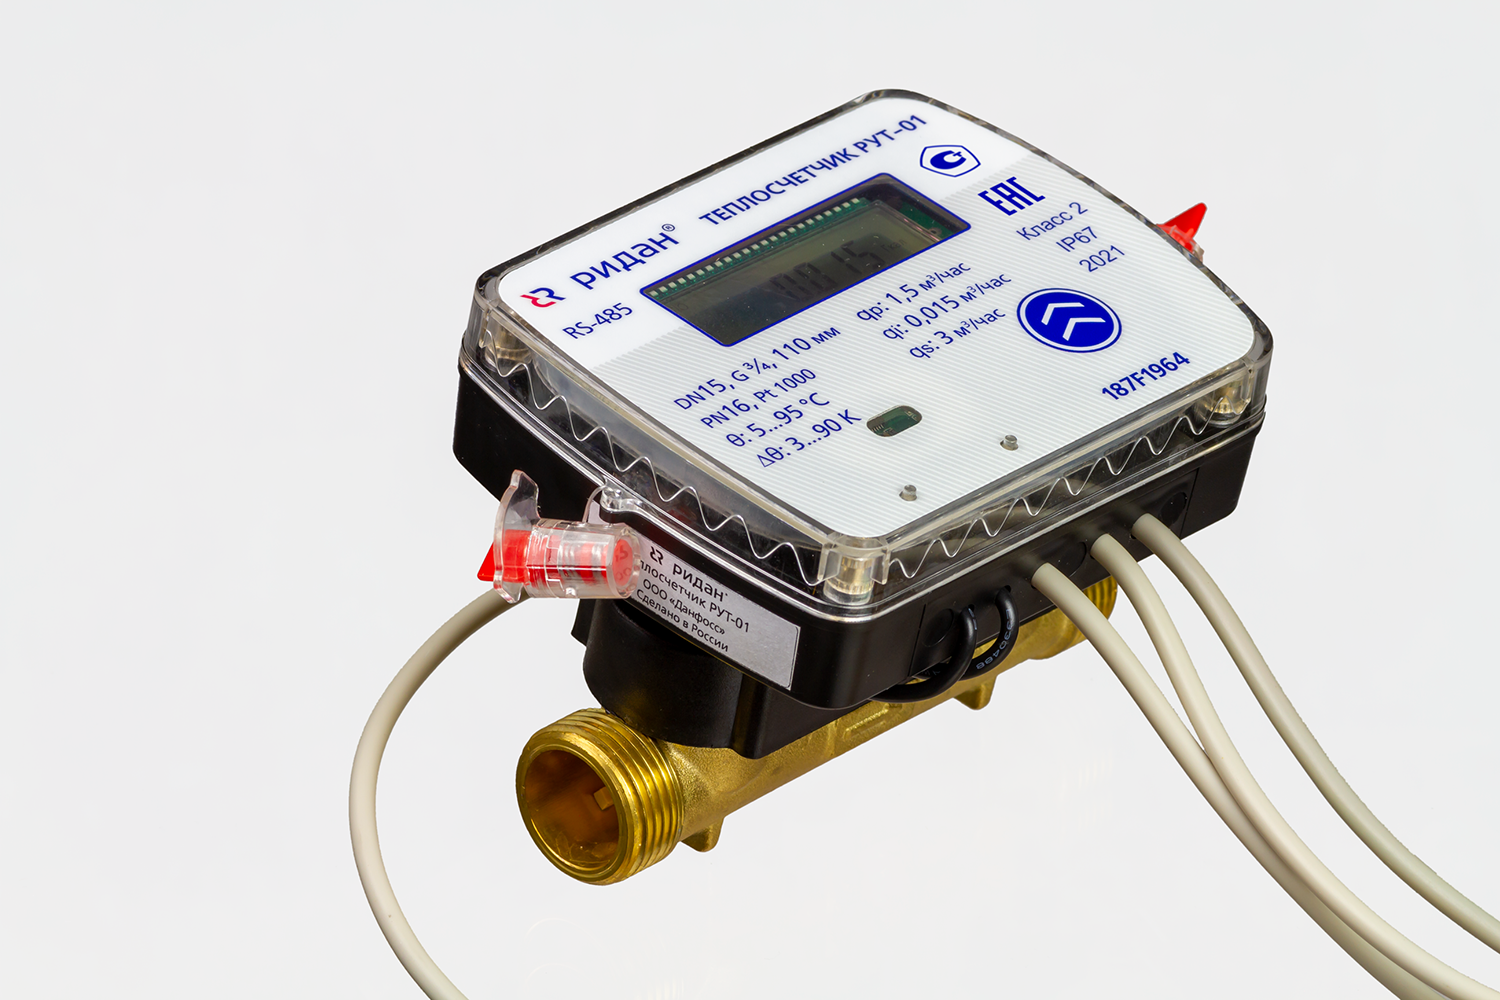 Теплосчетчик ультразвуковой РУТ-01 для учета в системах водяного отопления 187F1963PR